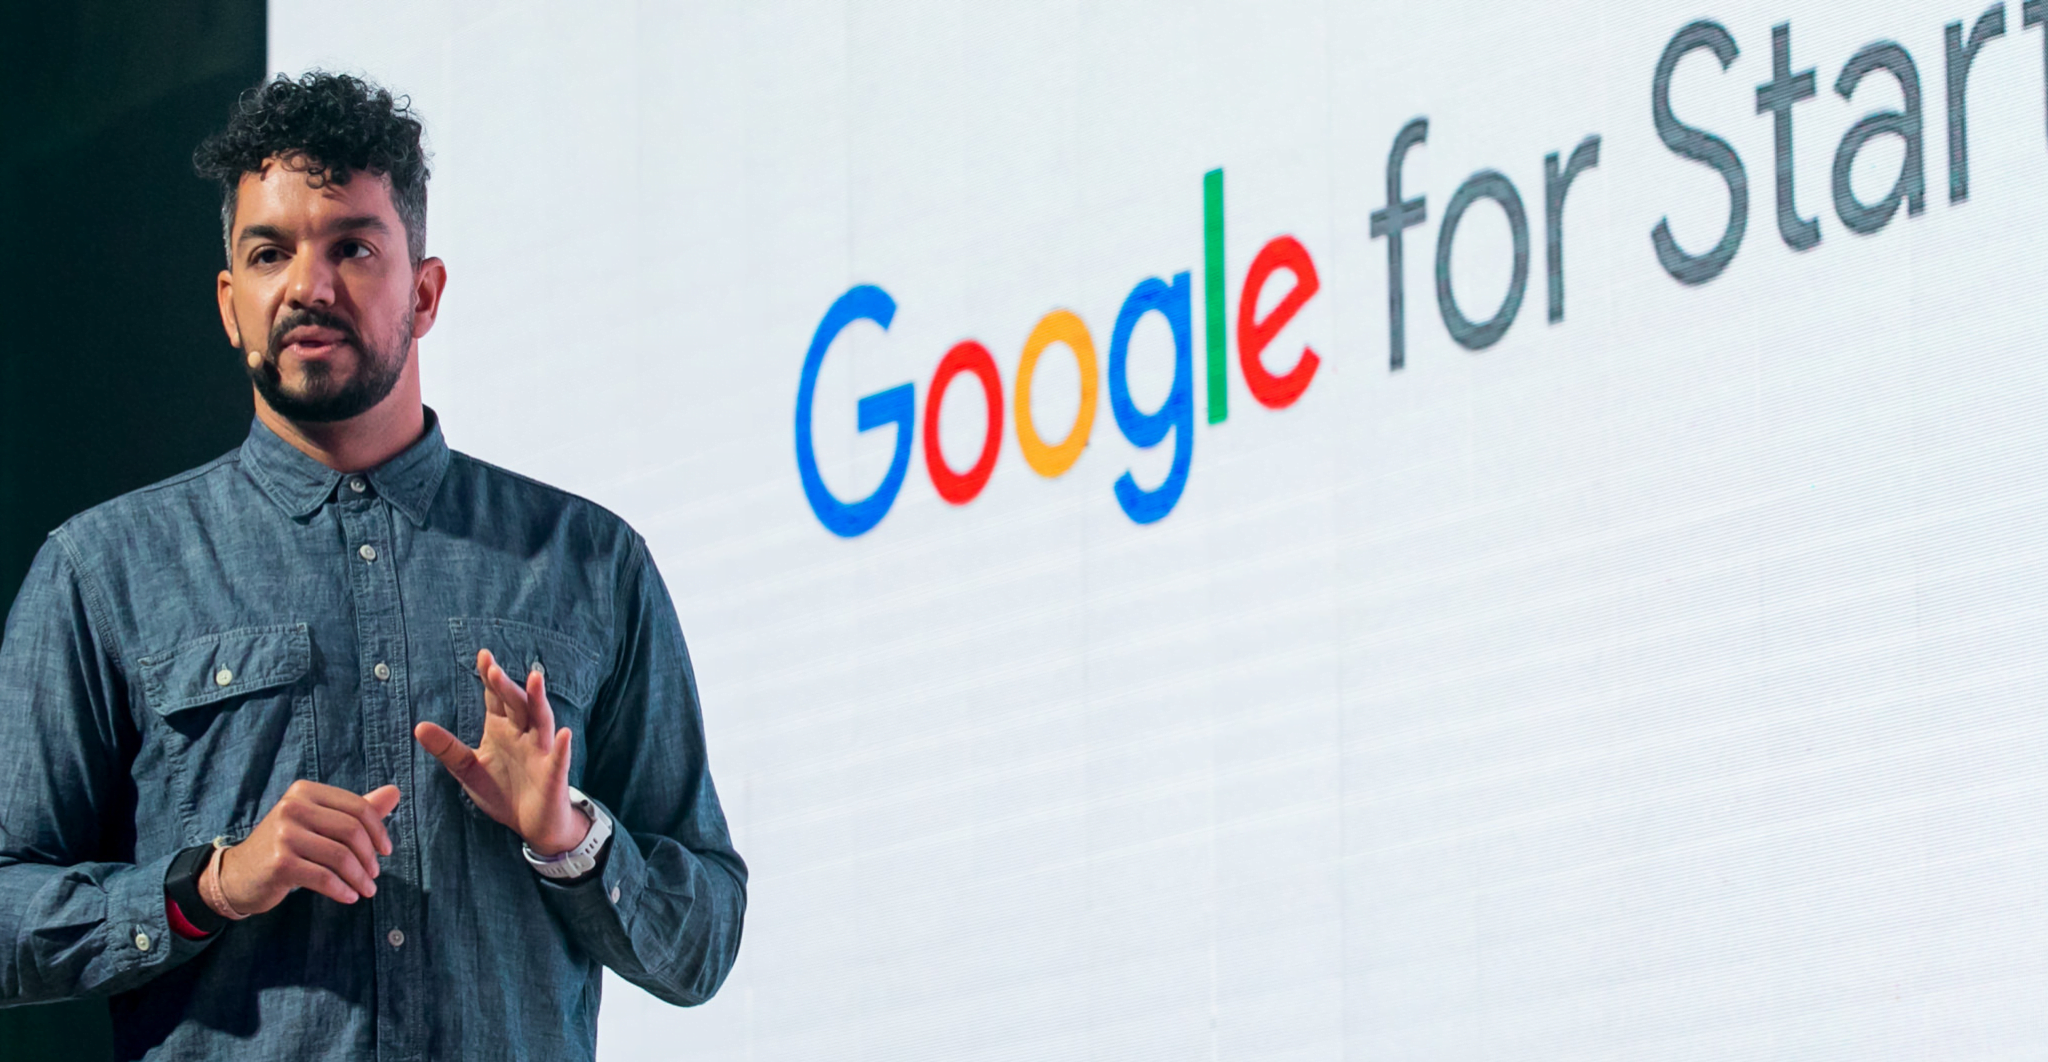 Google for Startups lança panorama que revela desafios e oportunidades para IA generativa no Brasil 